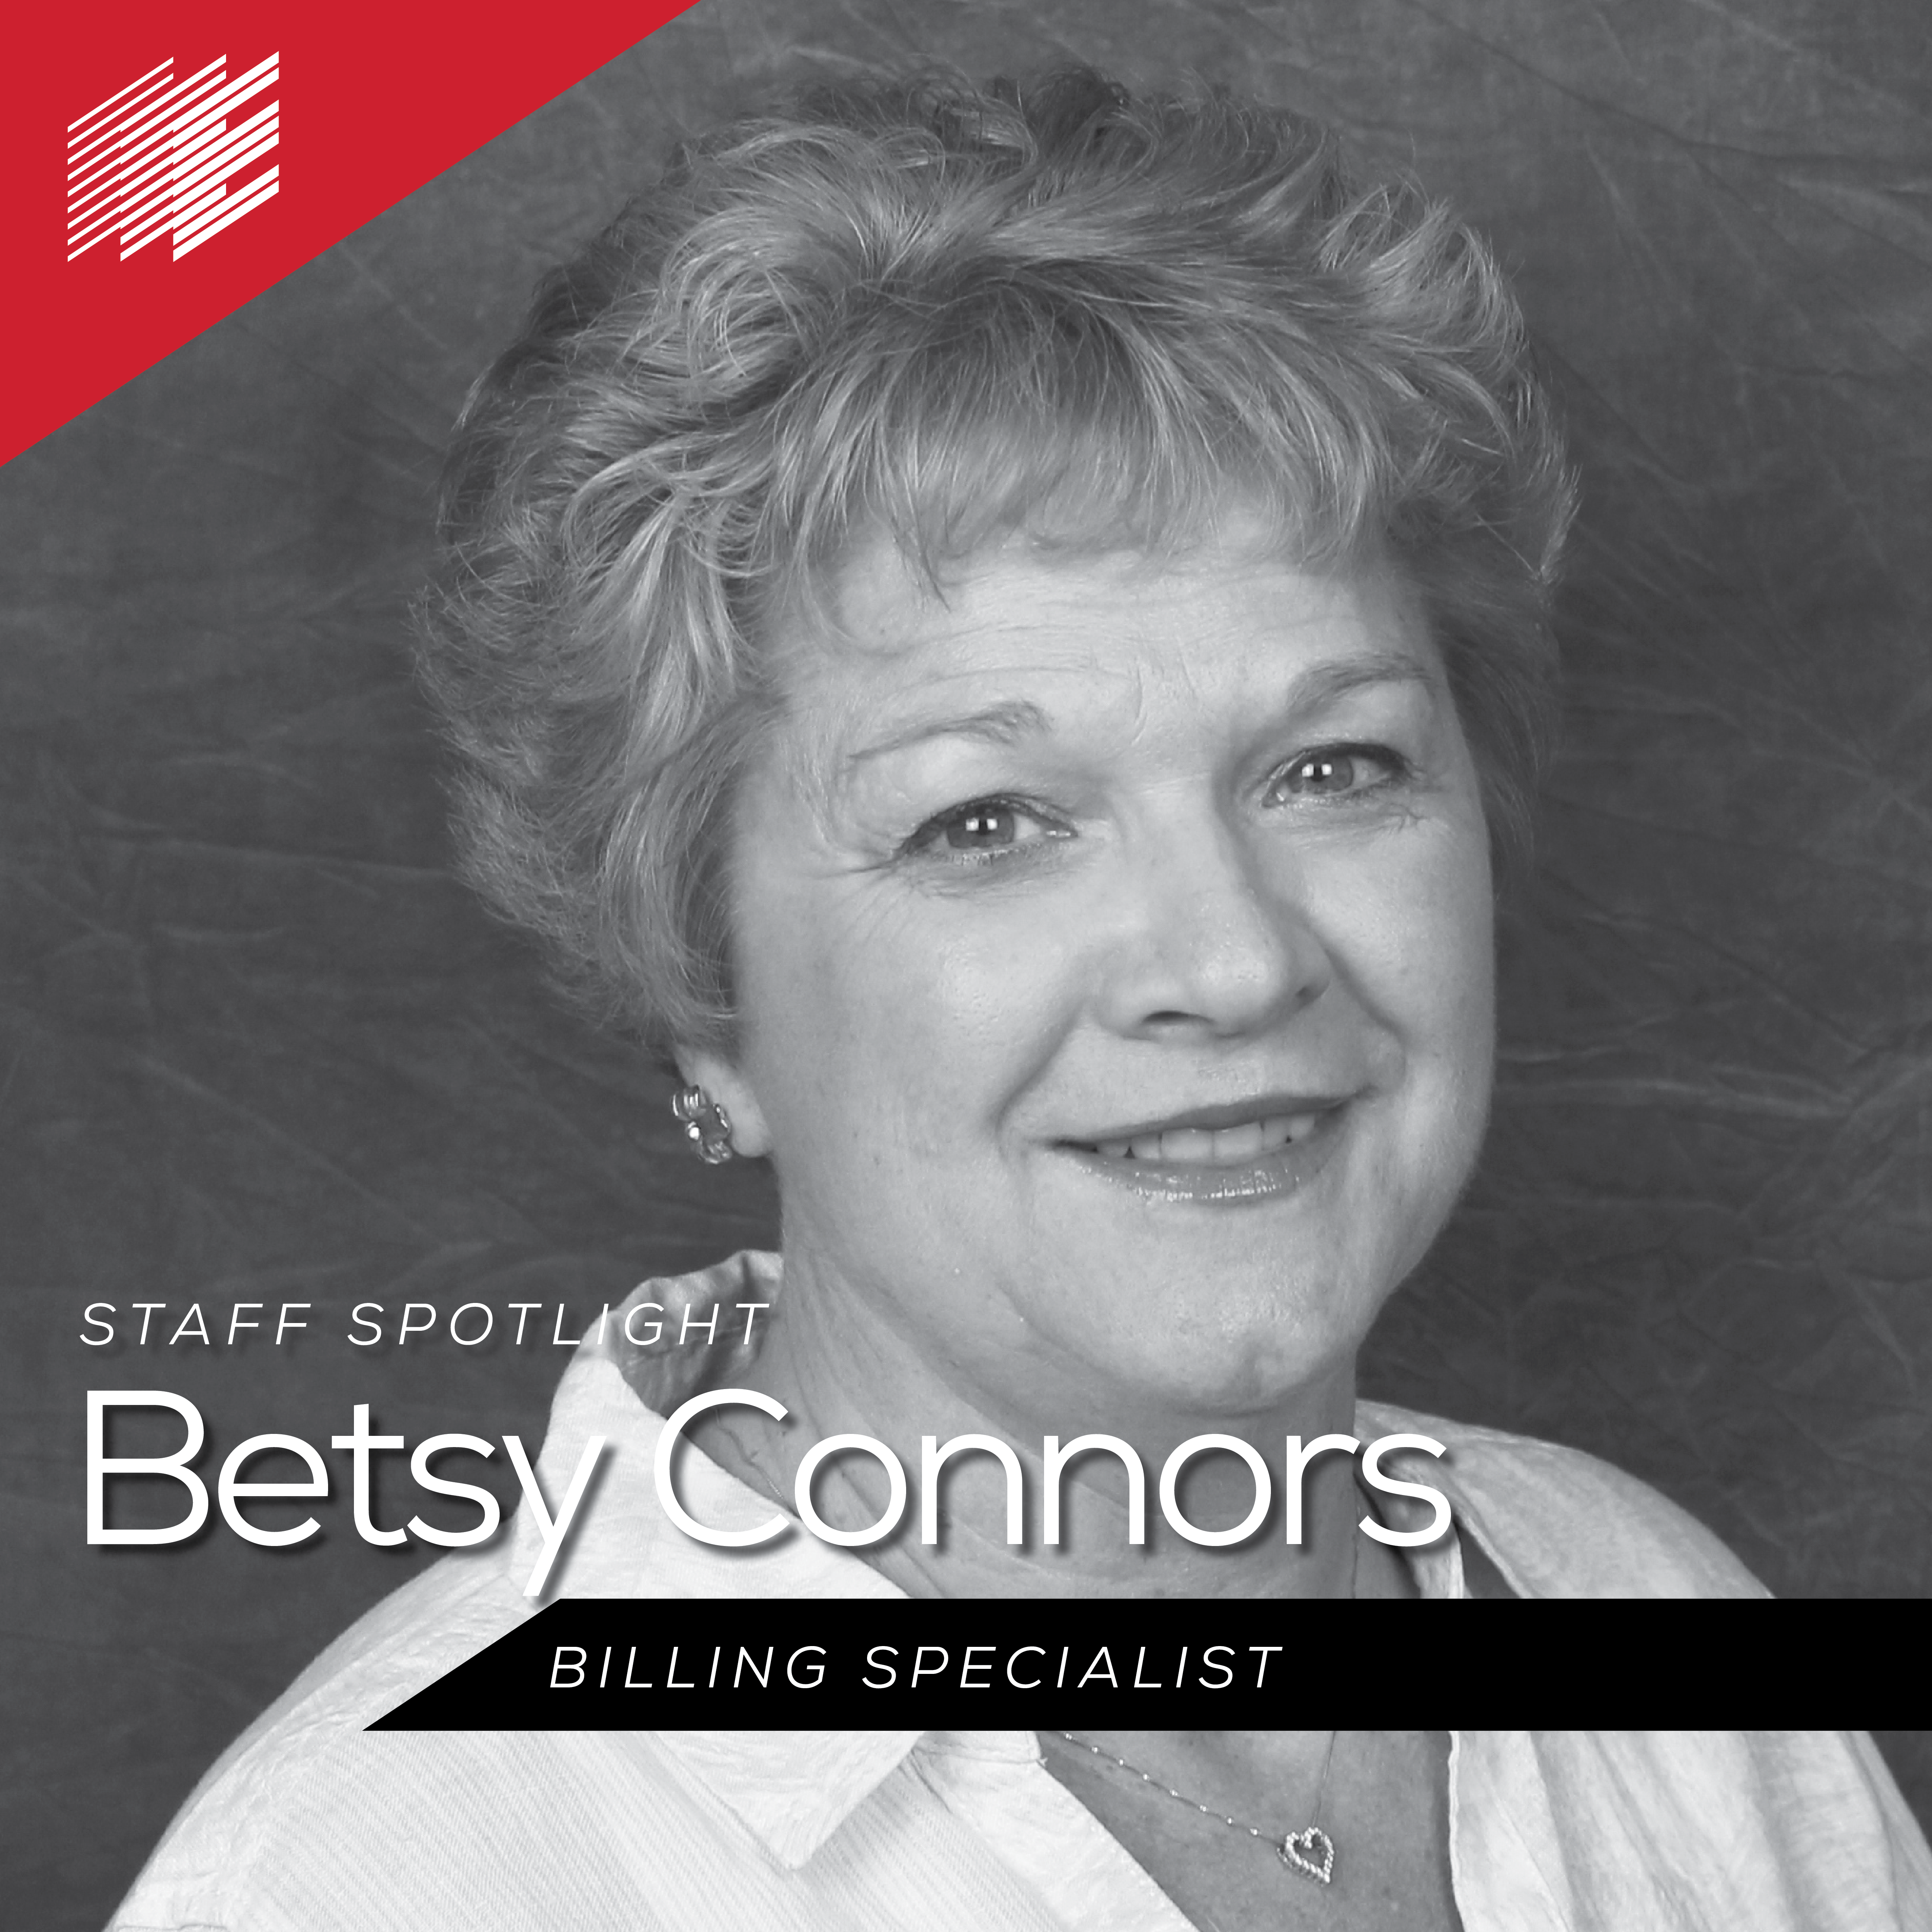 Betsy Connors Staff Spotlight